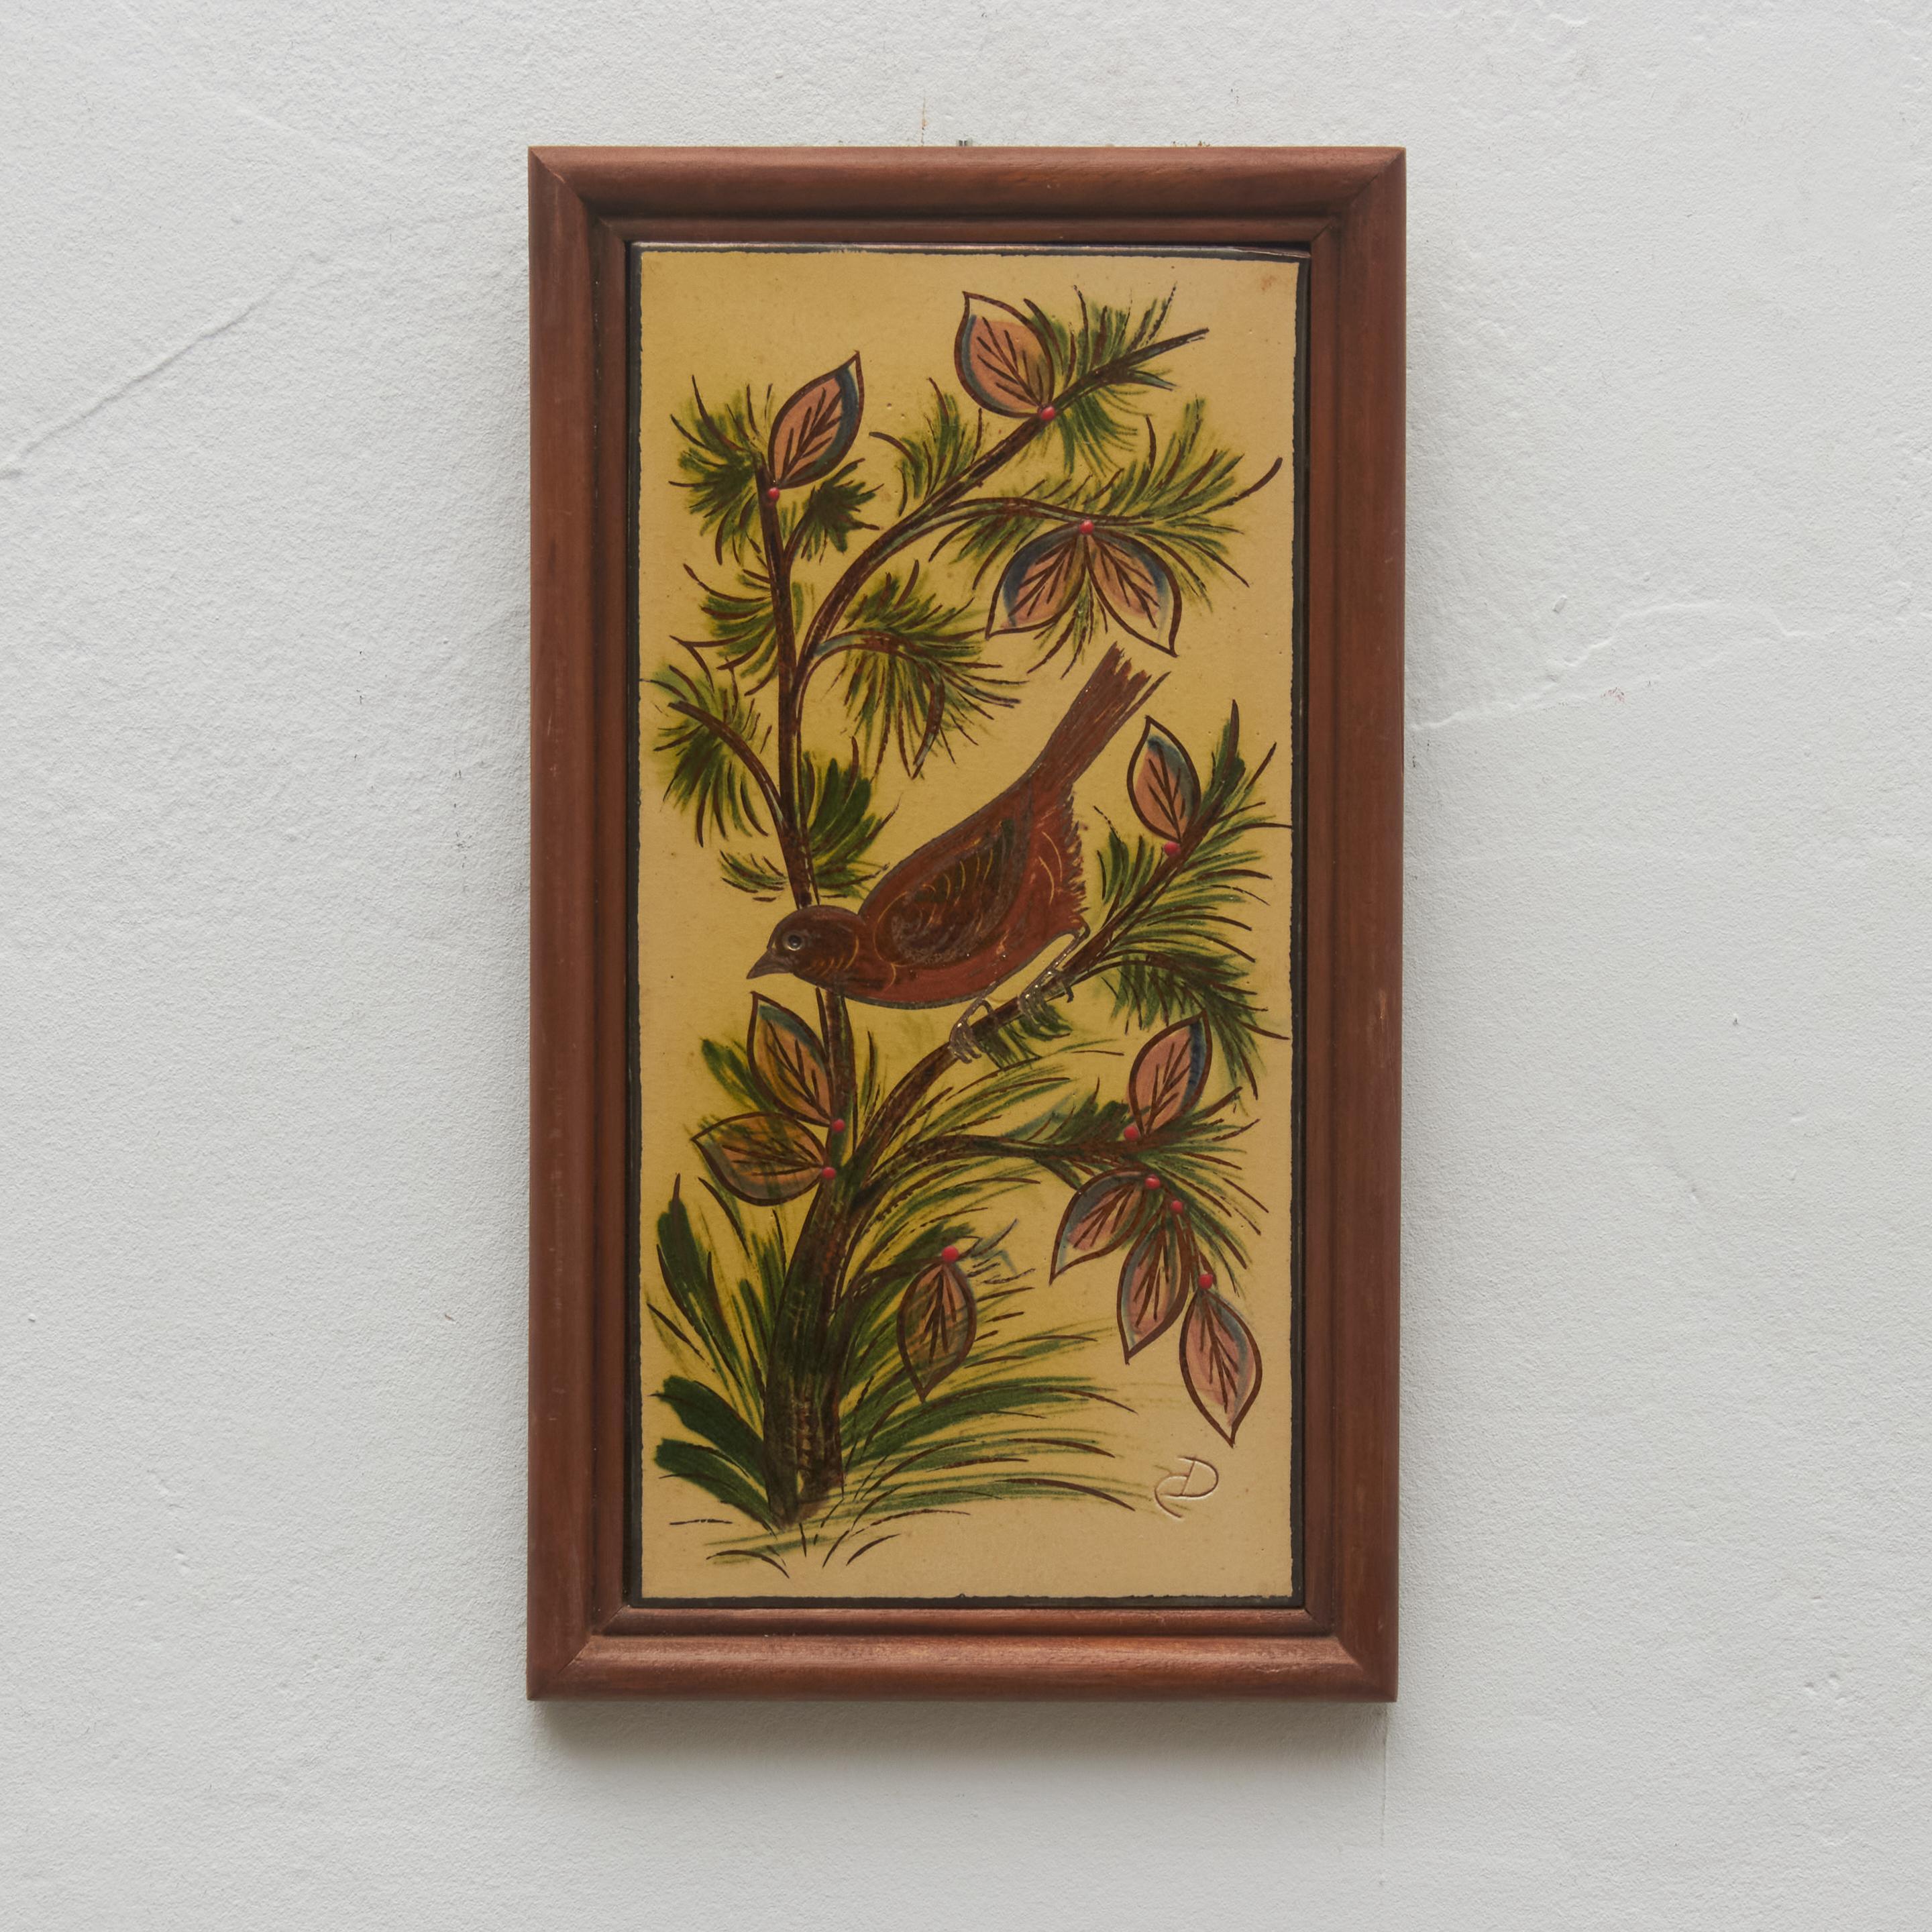 Keramisches, handbemaltes Kunstwerk eines Vogels, entworfen vom katalanischen Künstler Diaz Costa, um 1960.
Gerahmt. Unterschrieben.

Im Originalzustand, mit geringfügigen Gebrauchsspuren, die dem Alter und dem Gebrauch entsprechen, wobei eine